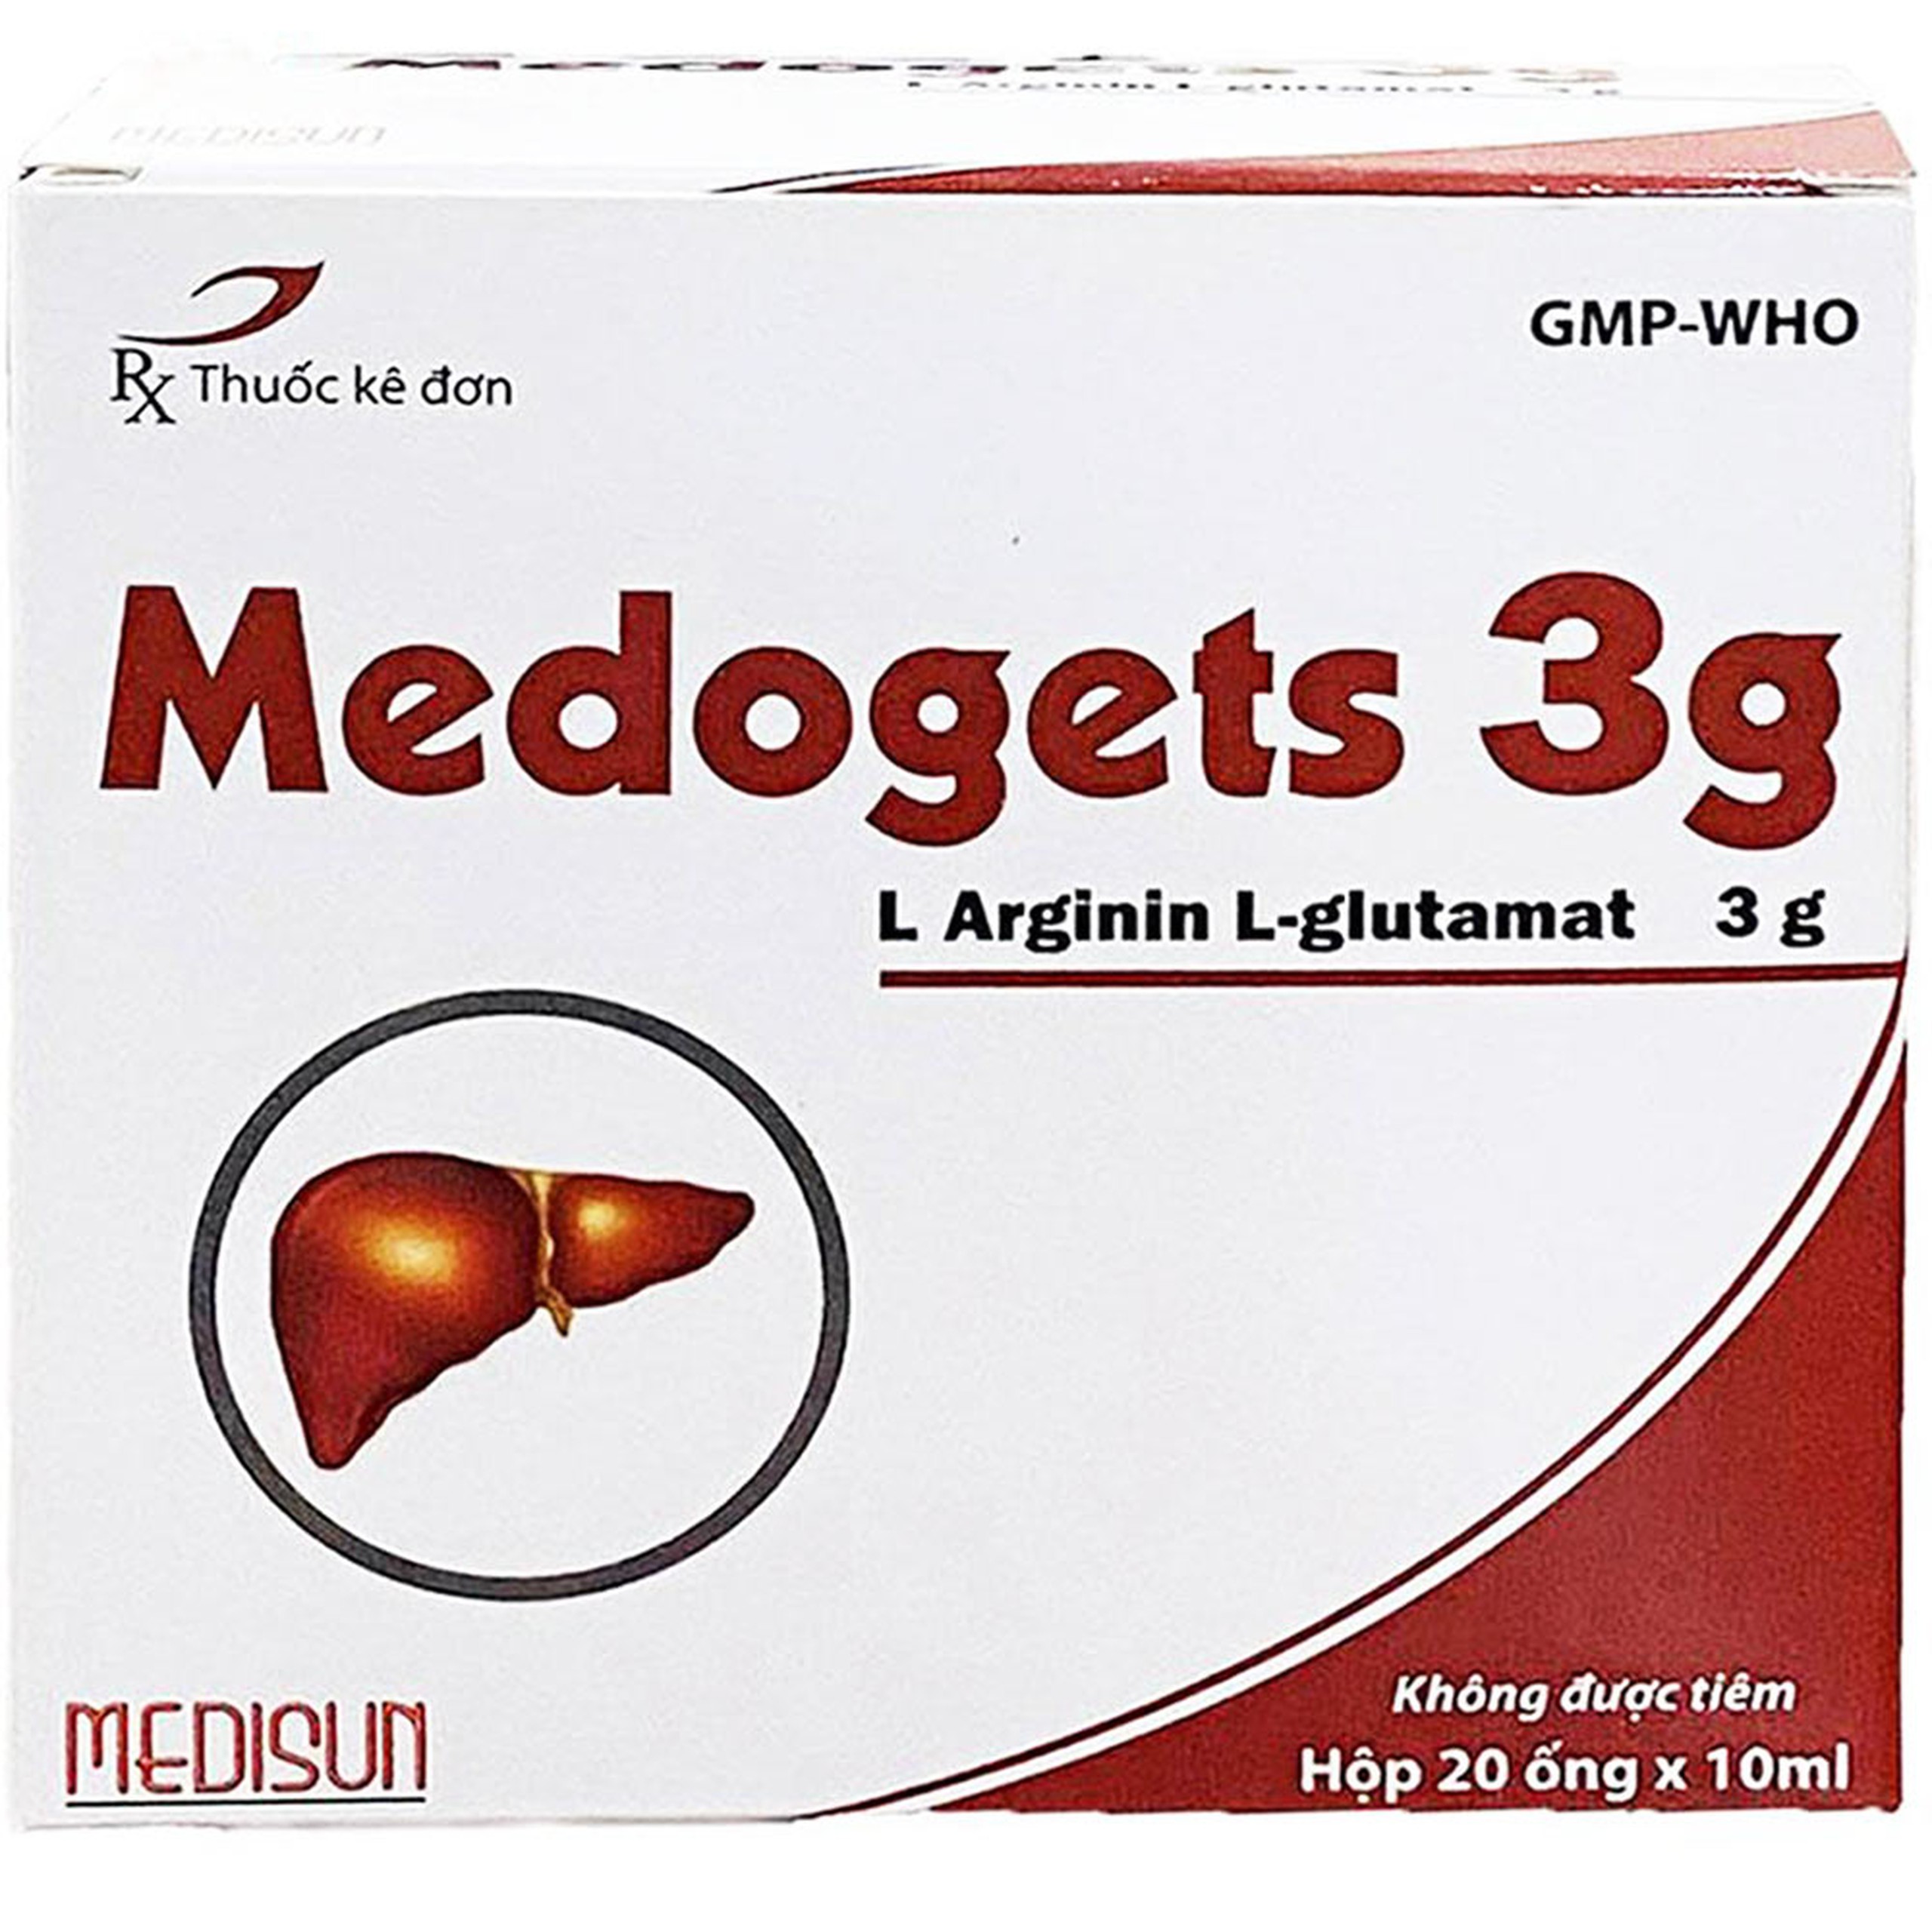 Dung dịch uống Medogets 3g Medisun dùng trong mệt mỏi, suy nhược cơ thể (20 ống x 10ml)